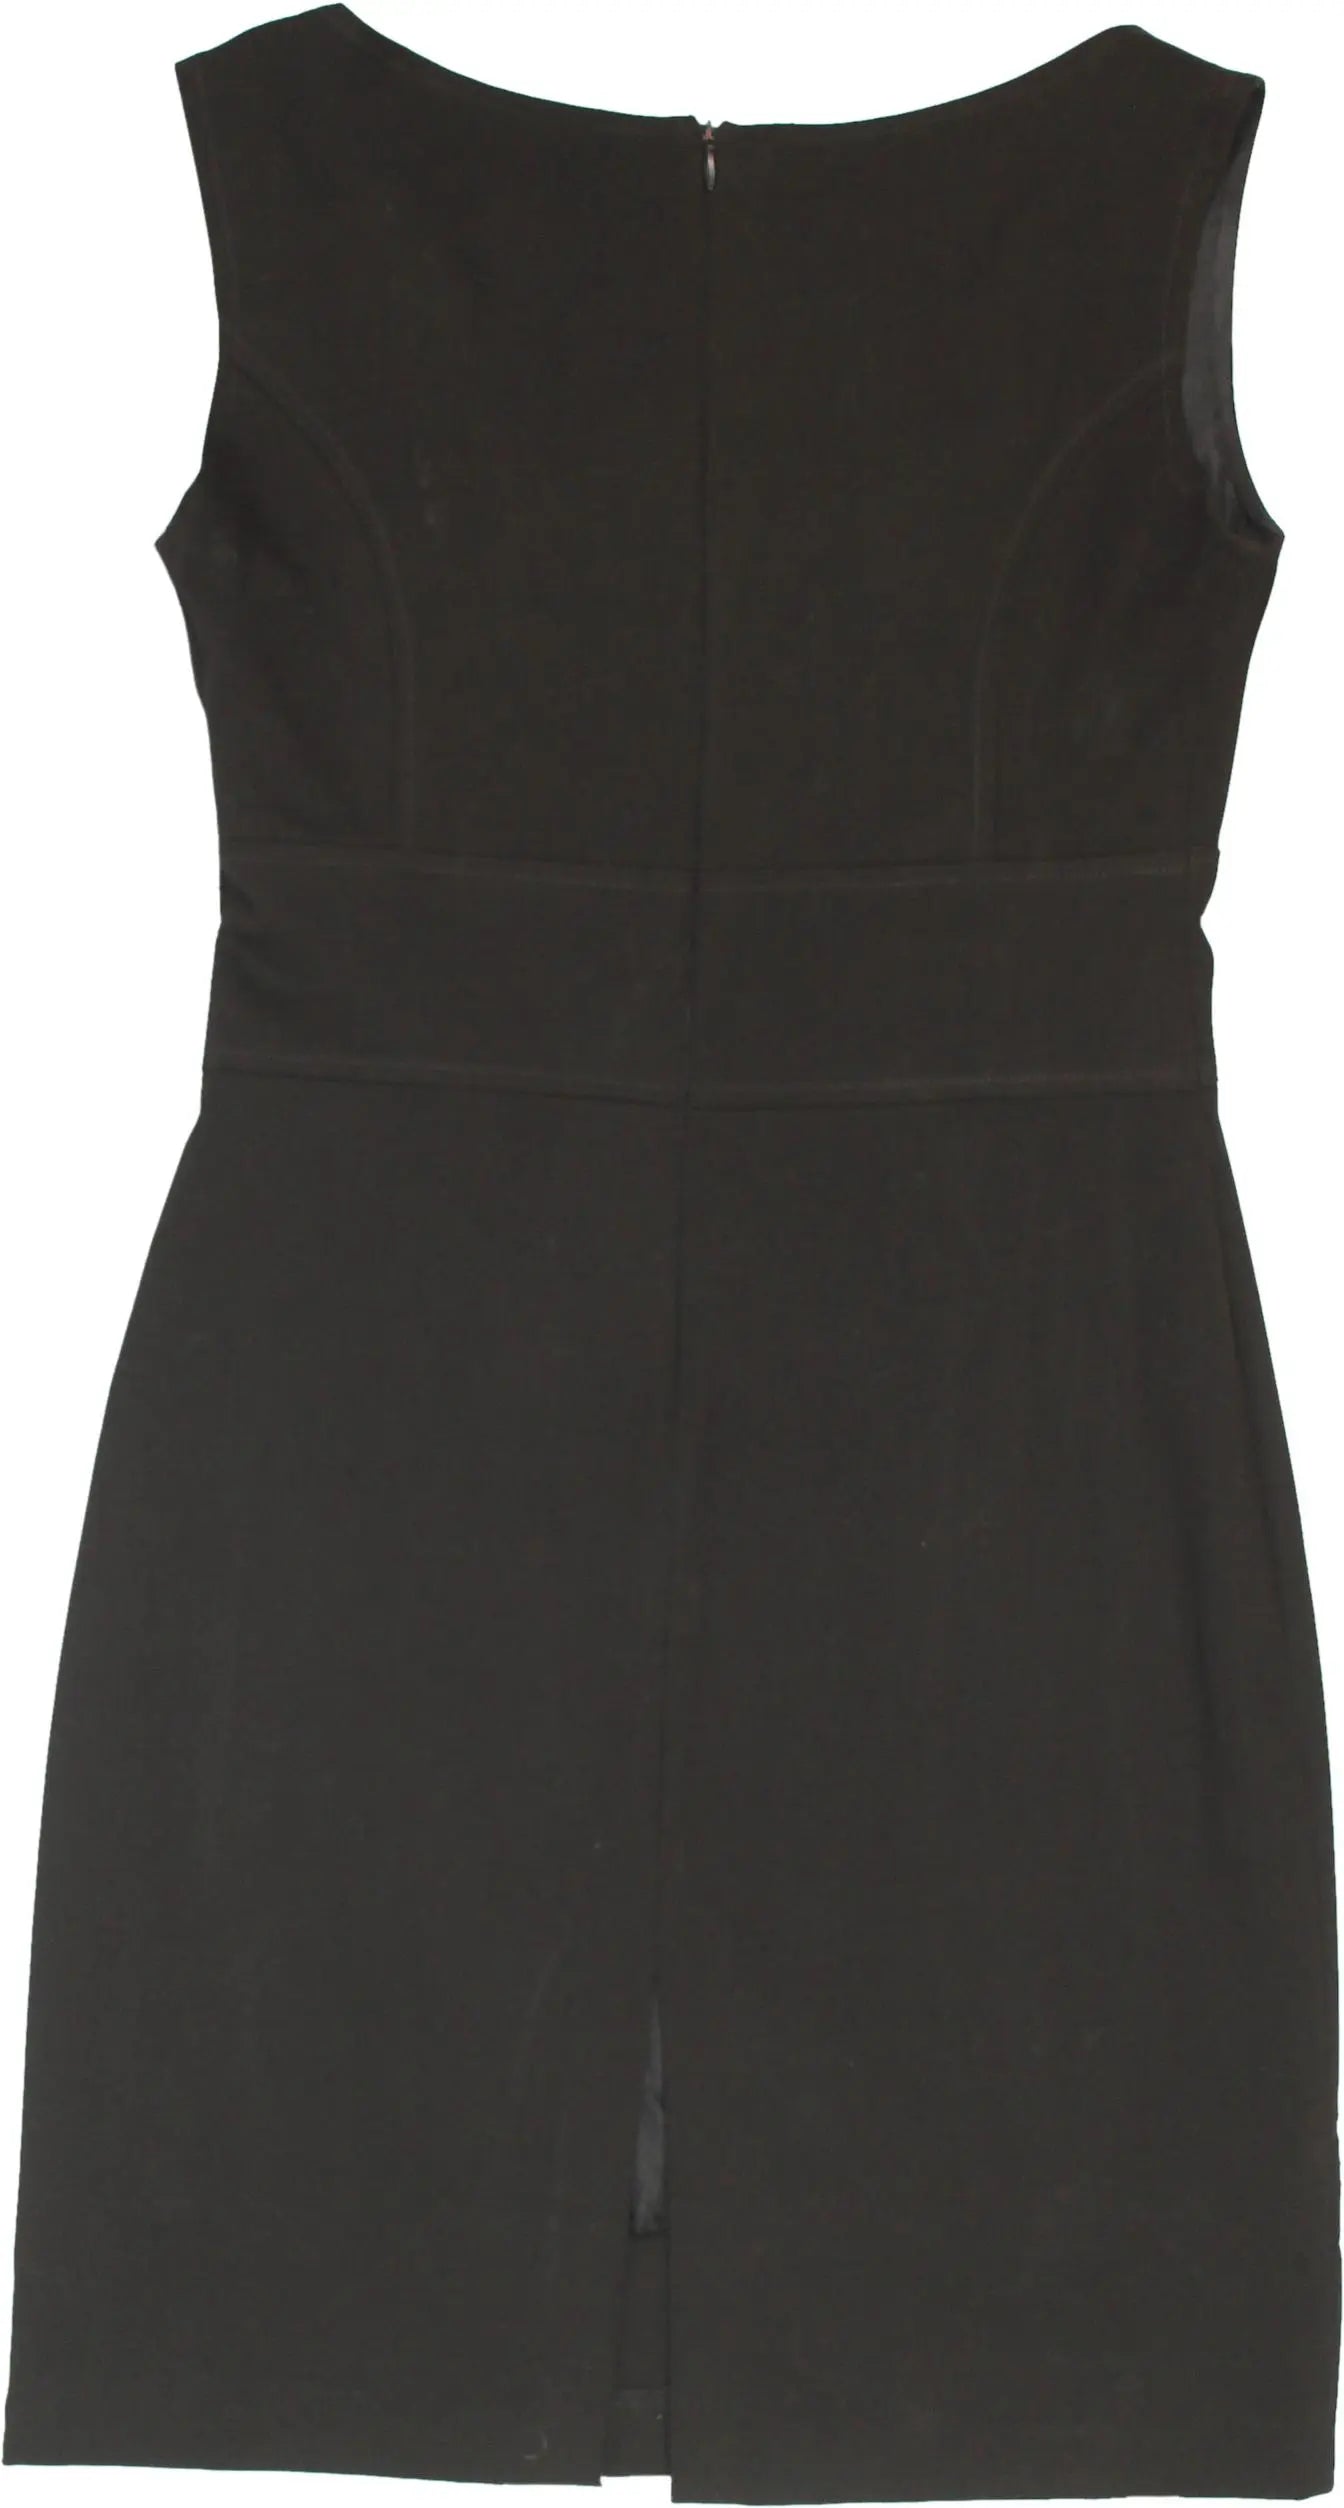 Scelte D'autore - Black Mini Dress- ThriftTale.com - Vintage and second handclothing